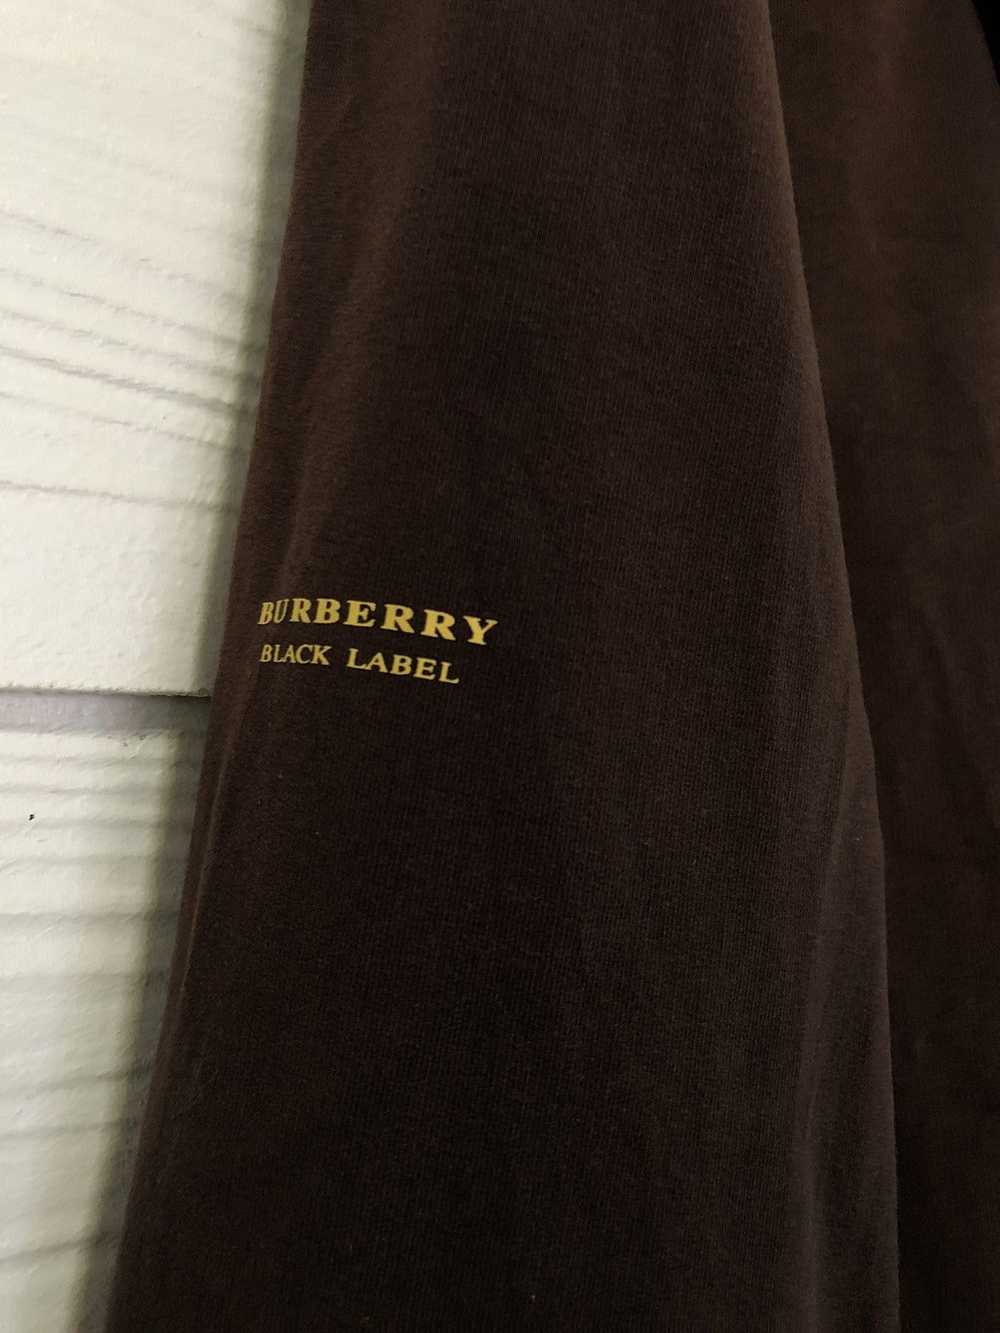 Burberry Burberry black label zip up hoodie - image 3